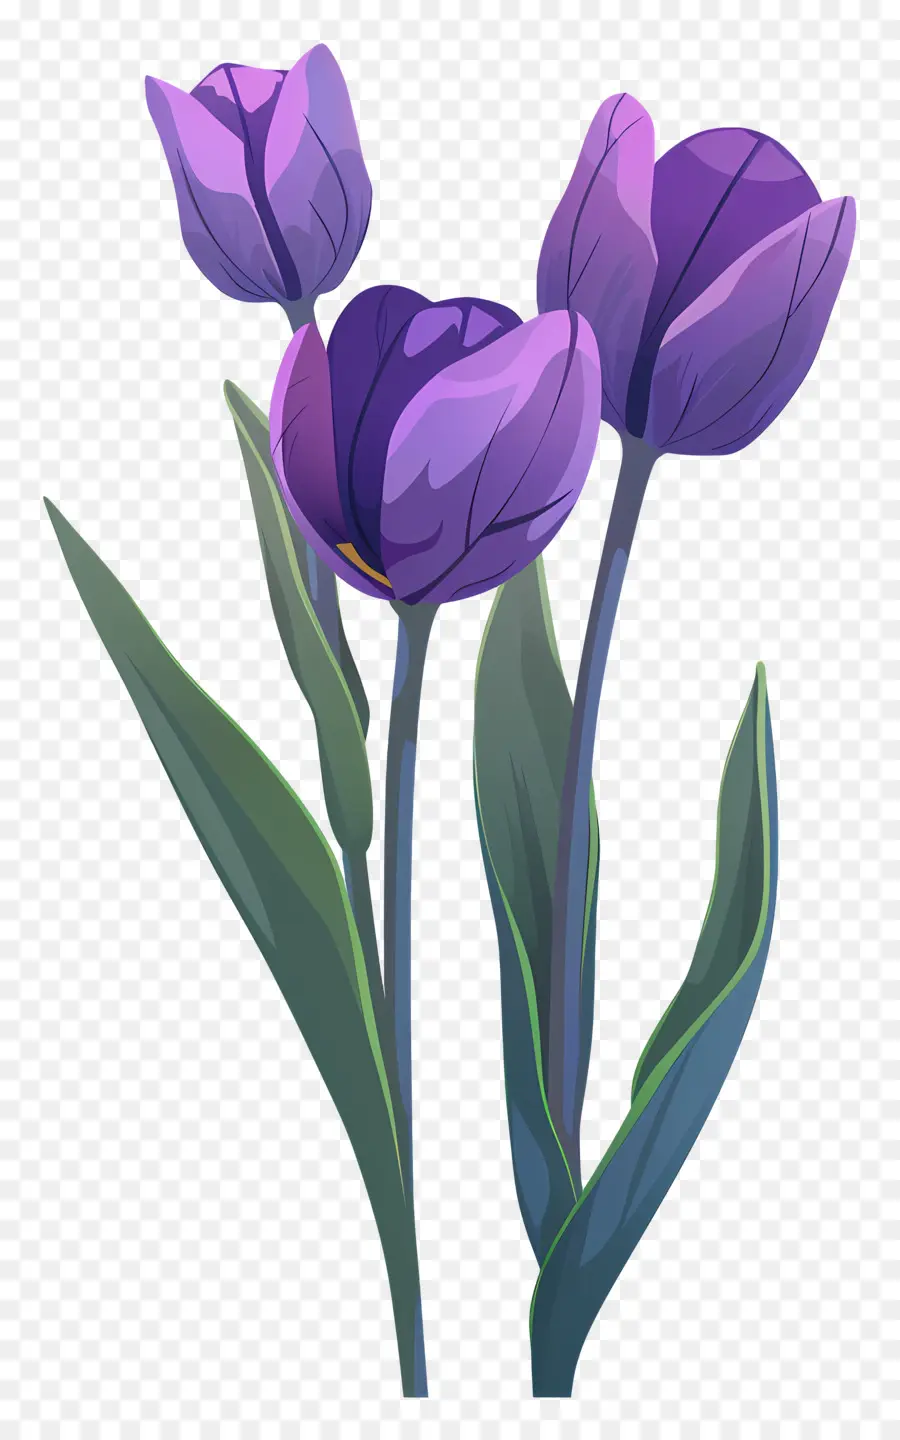 Fiori Da Giardino - Tre tulipani viola su sfondo scuro